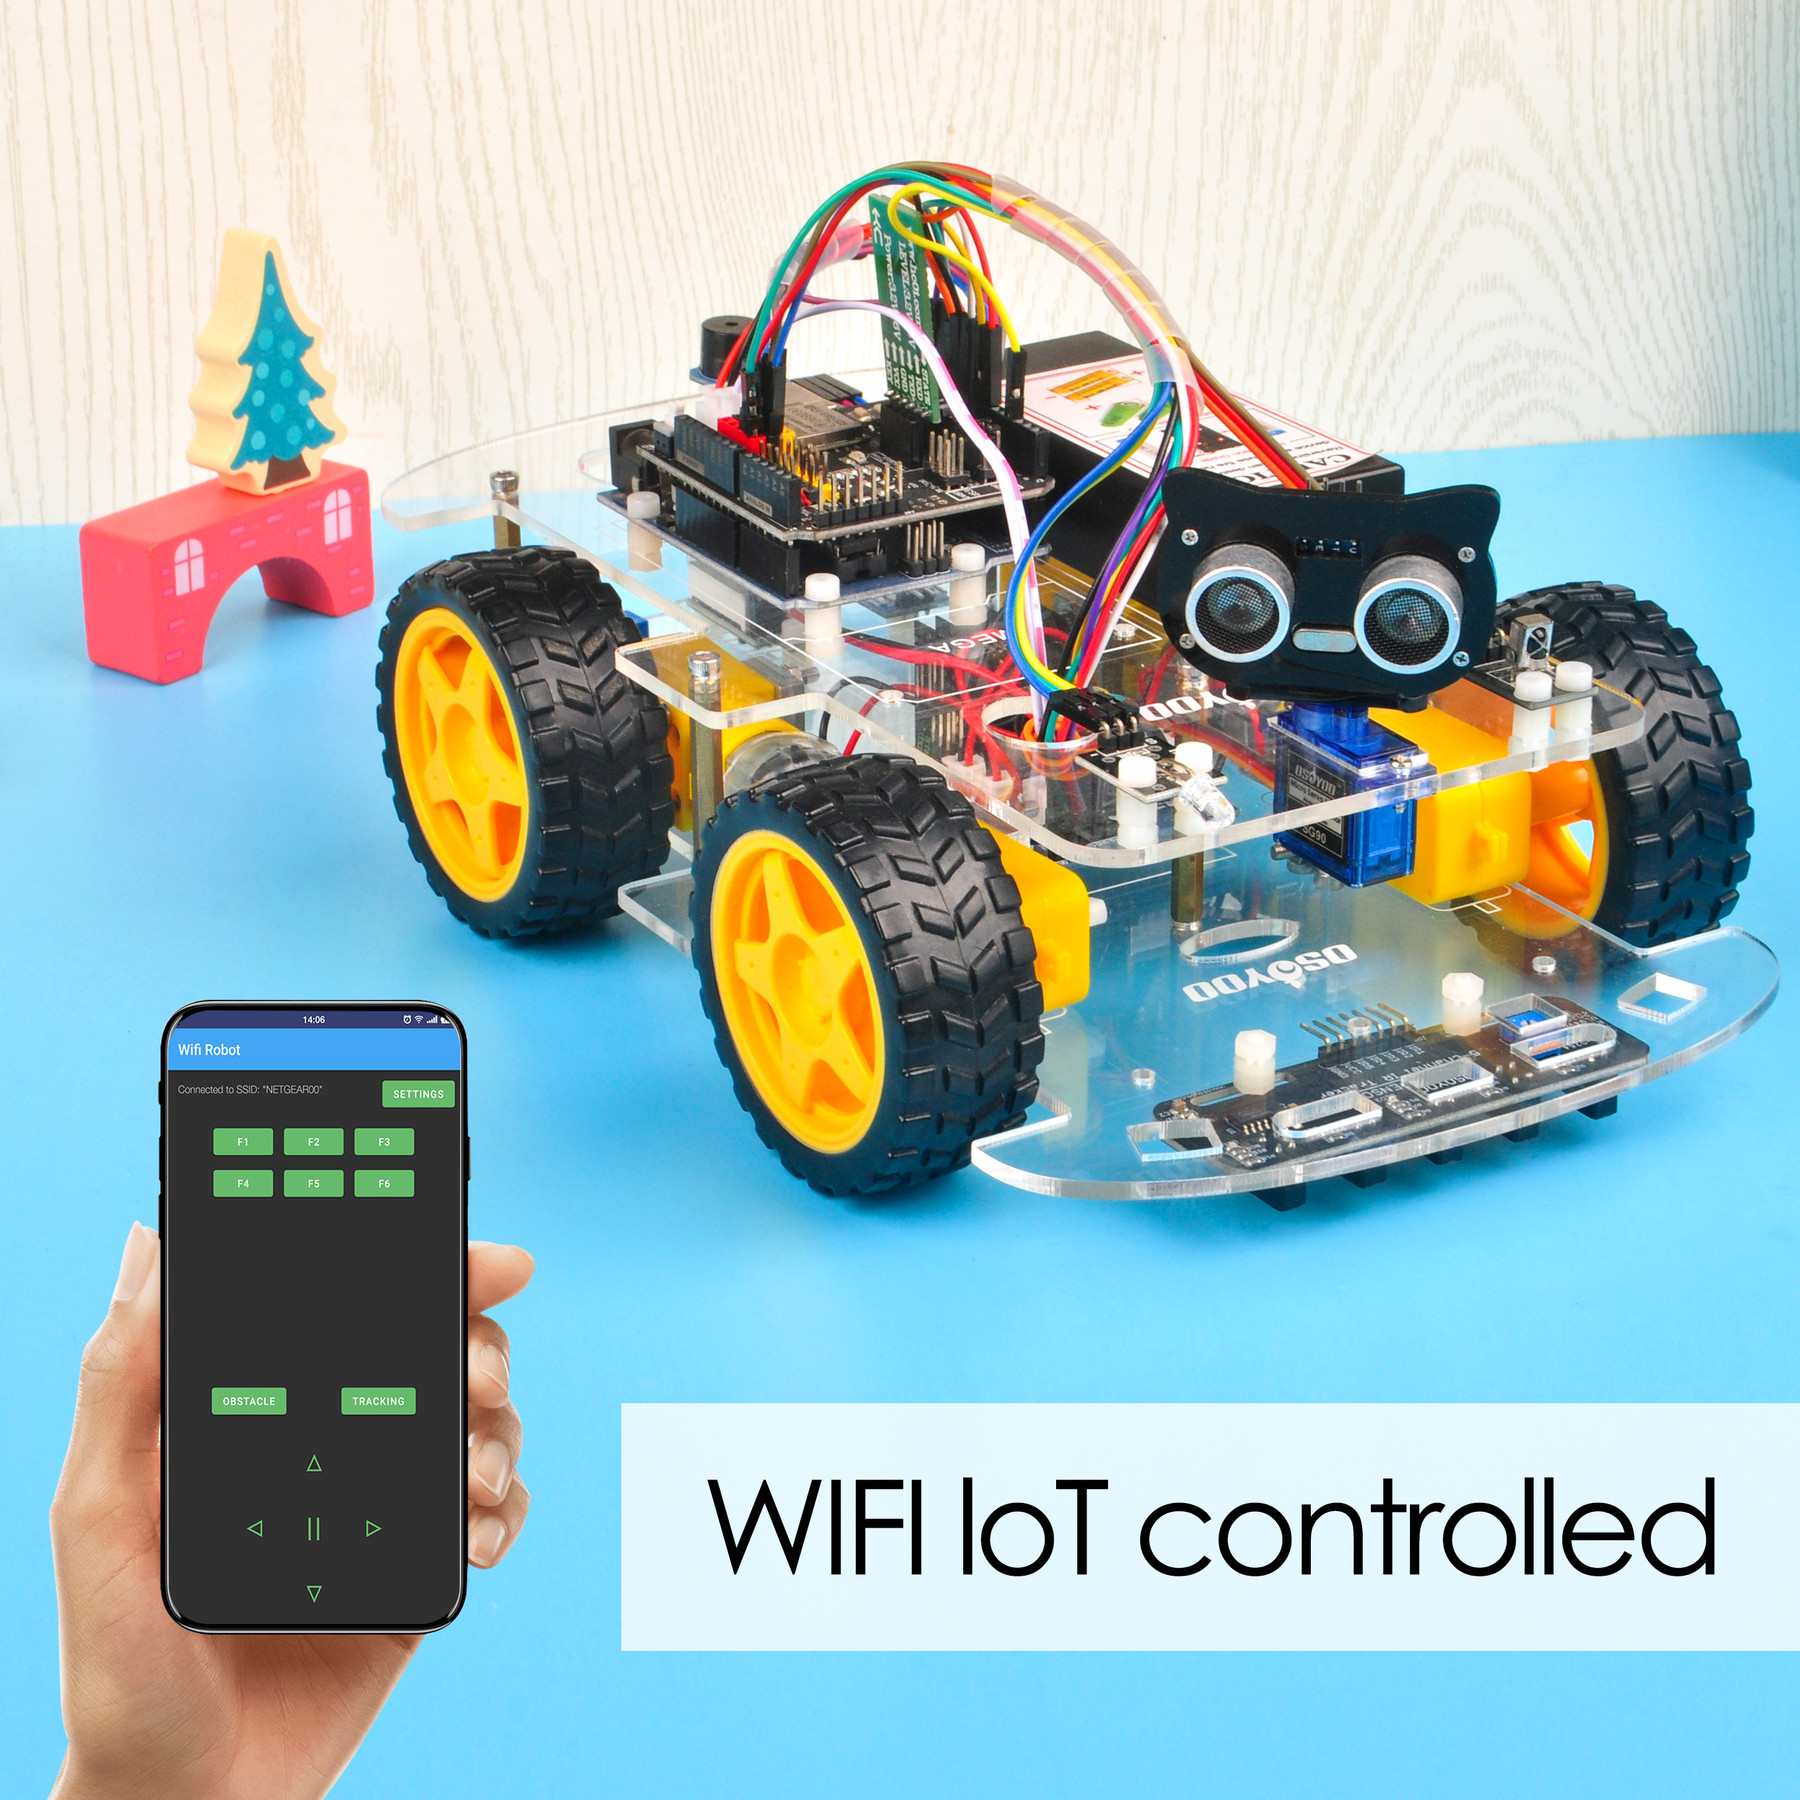 Osoyoo V2.1 Robot Car Lesson 6: Use WIFI to control an IoT Robot Car